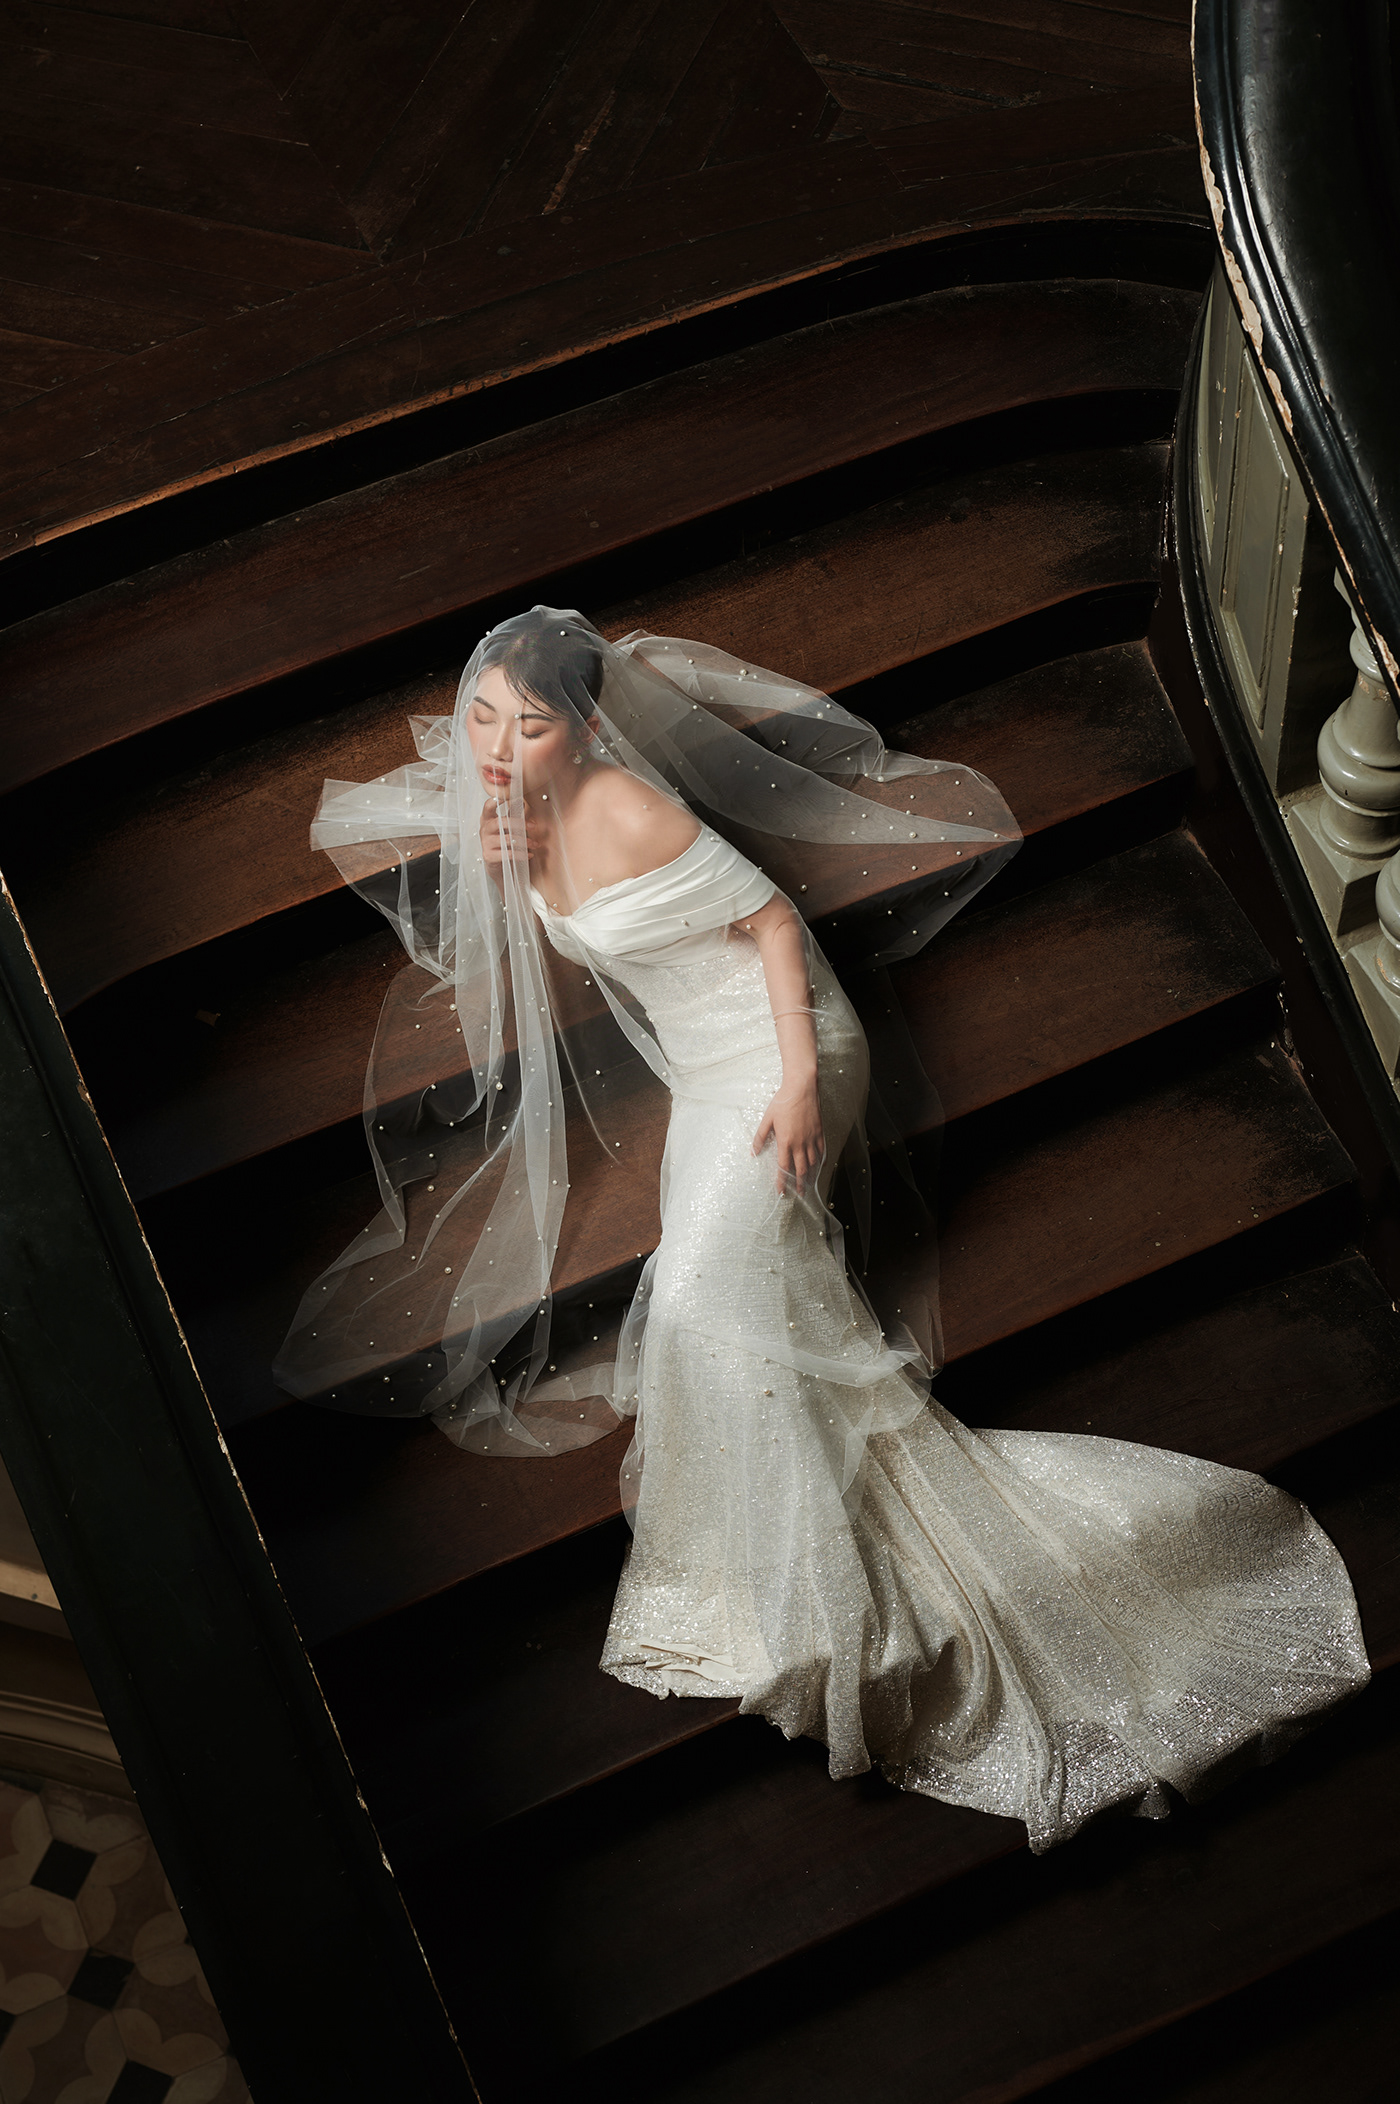 WEDDING DRESS bride Photography  Fashion  photoshoot stylist model Weddings weddingideas pose ideas